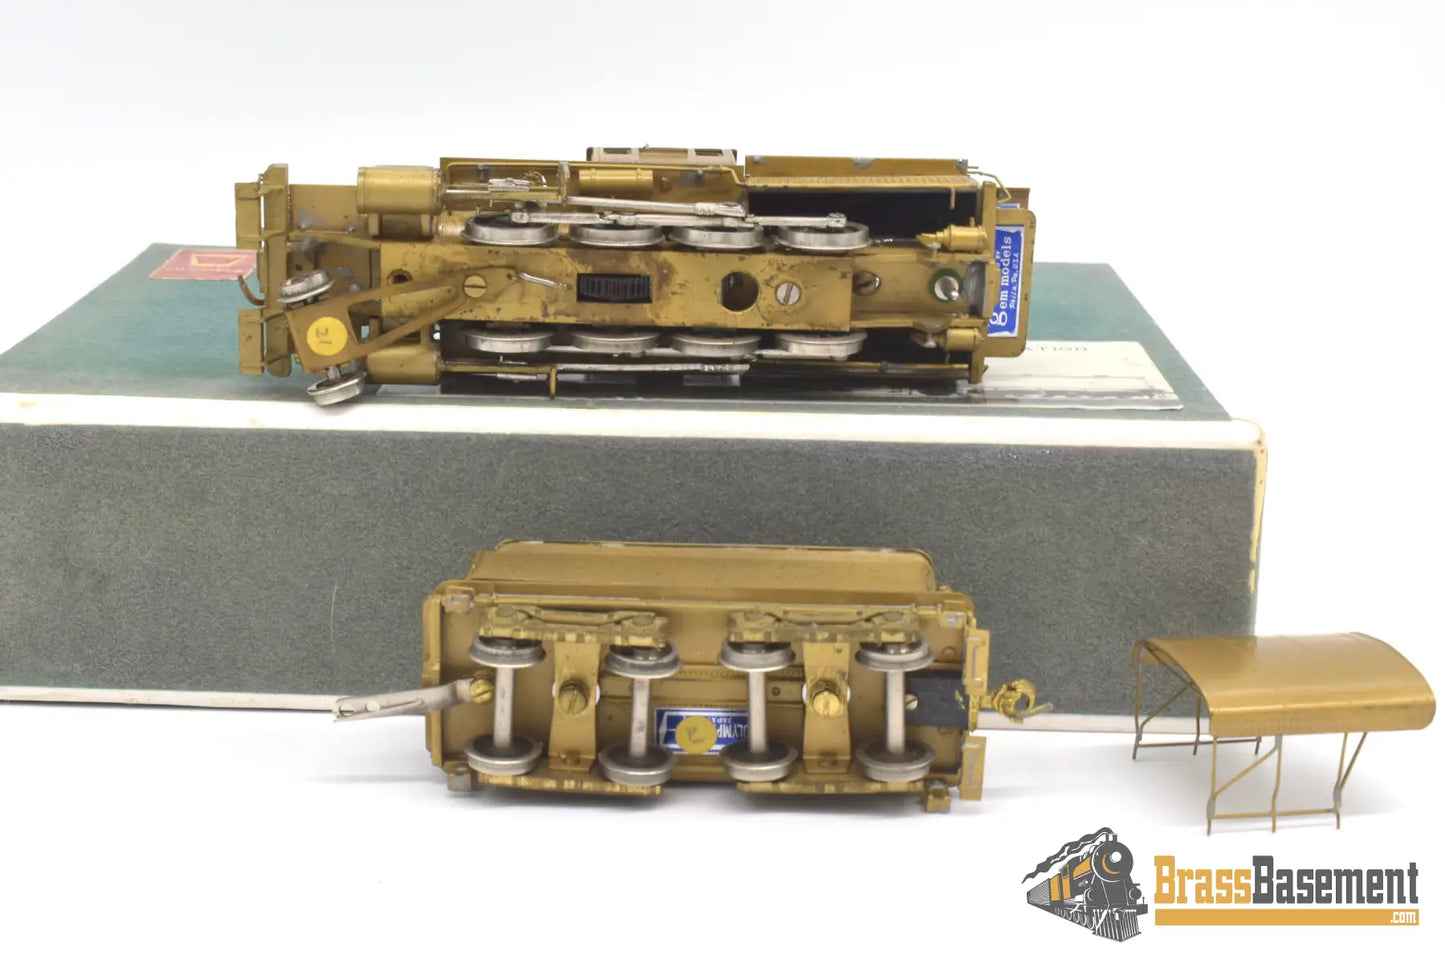 Ho Brass - Gem Models Eh - 105 Reading 2 - 8 - 0 I5C Camelback Project Steam